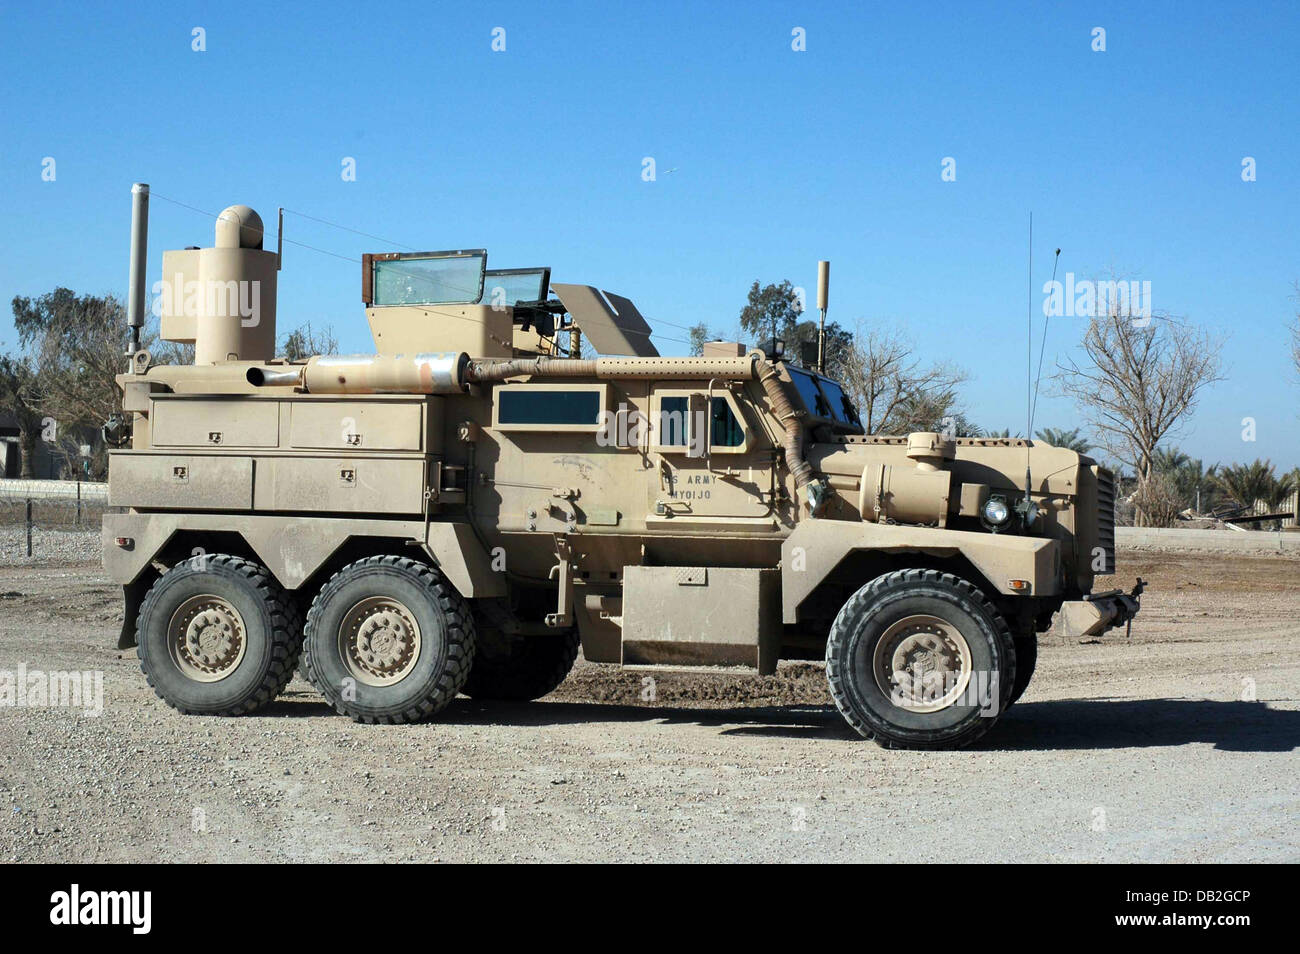 Ein Cougar 6 x 6 mir beständig Hinterhalt geschützt Fahrzeug patrouilliert die Straßen von Bagdad, Irak, März 2007. Das Fahrzeug wird von Force Protection Incorporated hergestellt. Foto: Carl Schulze Stockfoto